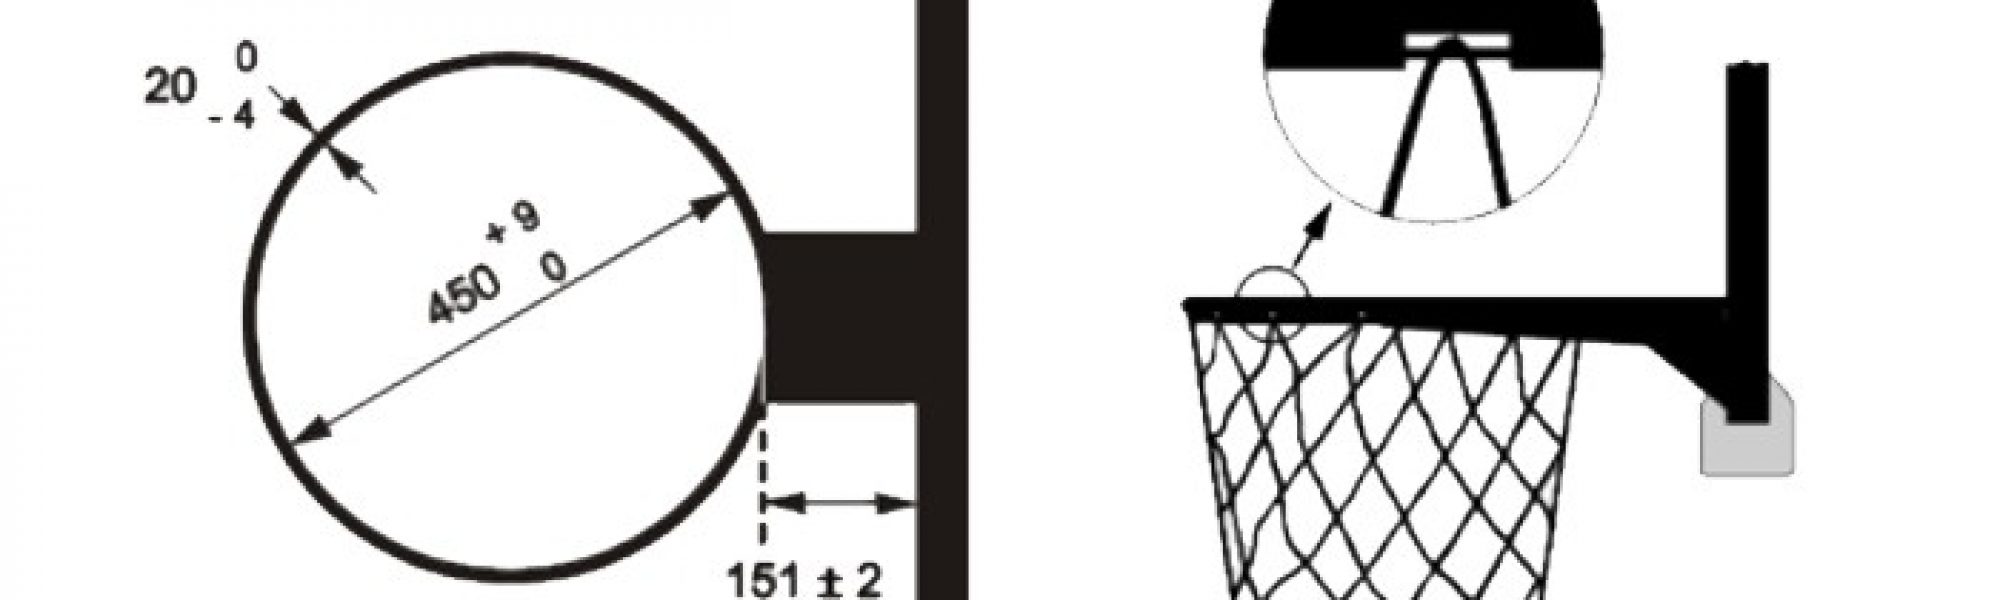 Testificar oxígeno Cuestiones diplomáticas Del cesto de melocotones al diámetro exacto: las medidas de una canasta de  baloncesto – Mondo Ibérica – News